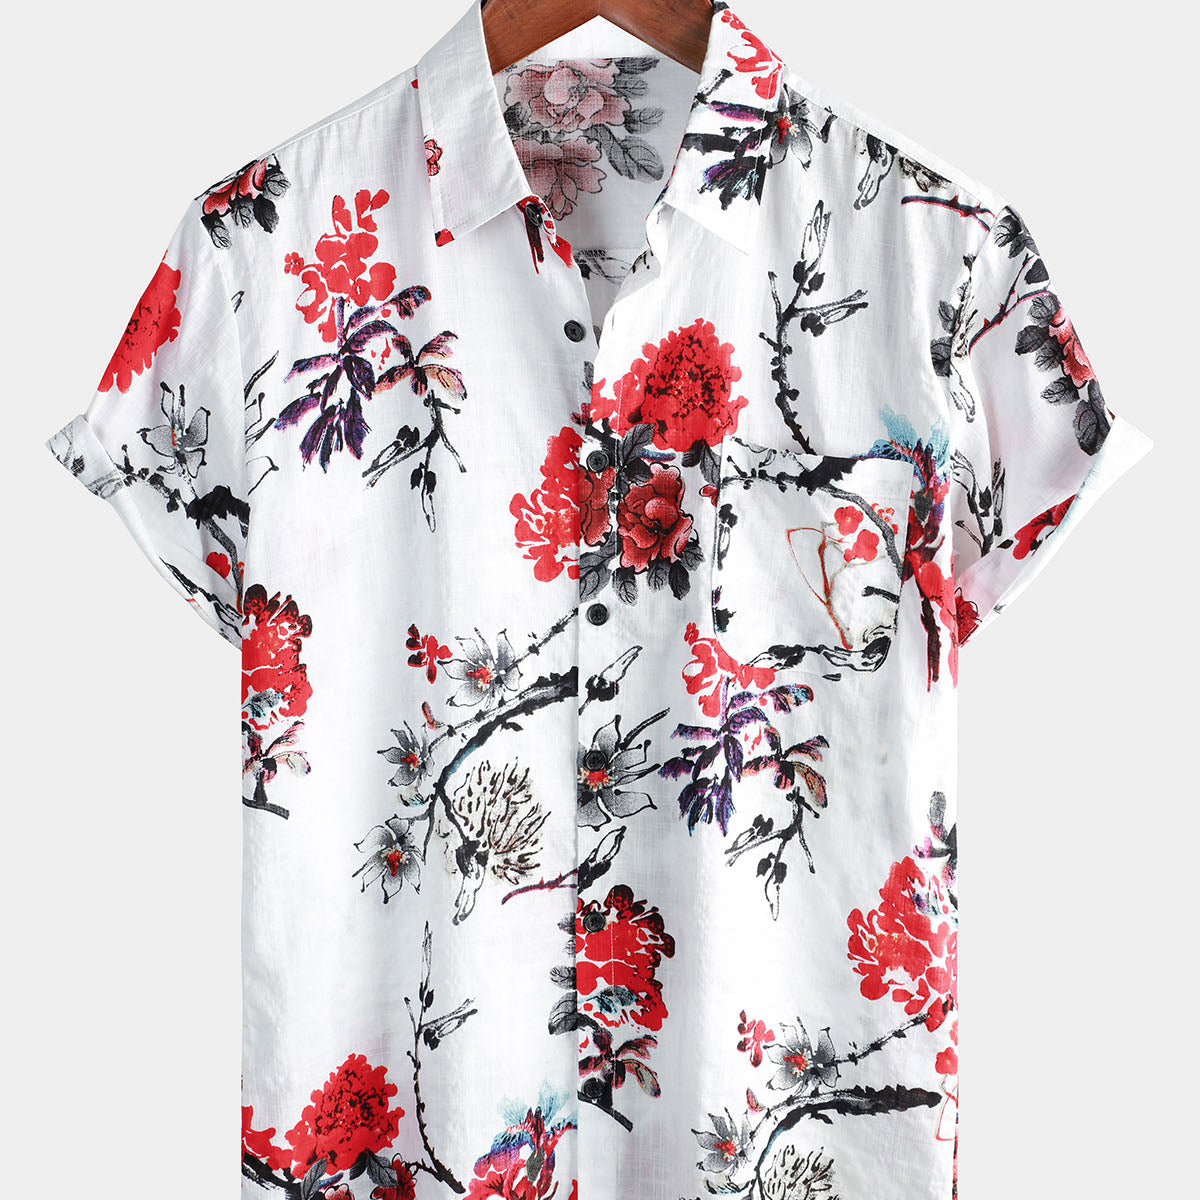 Men's Casual Floral Print Art Cruise Beach Short Sleeve Summer Shirt